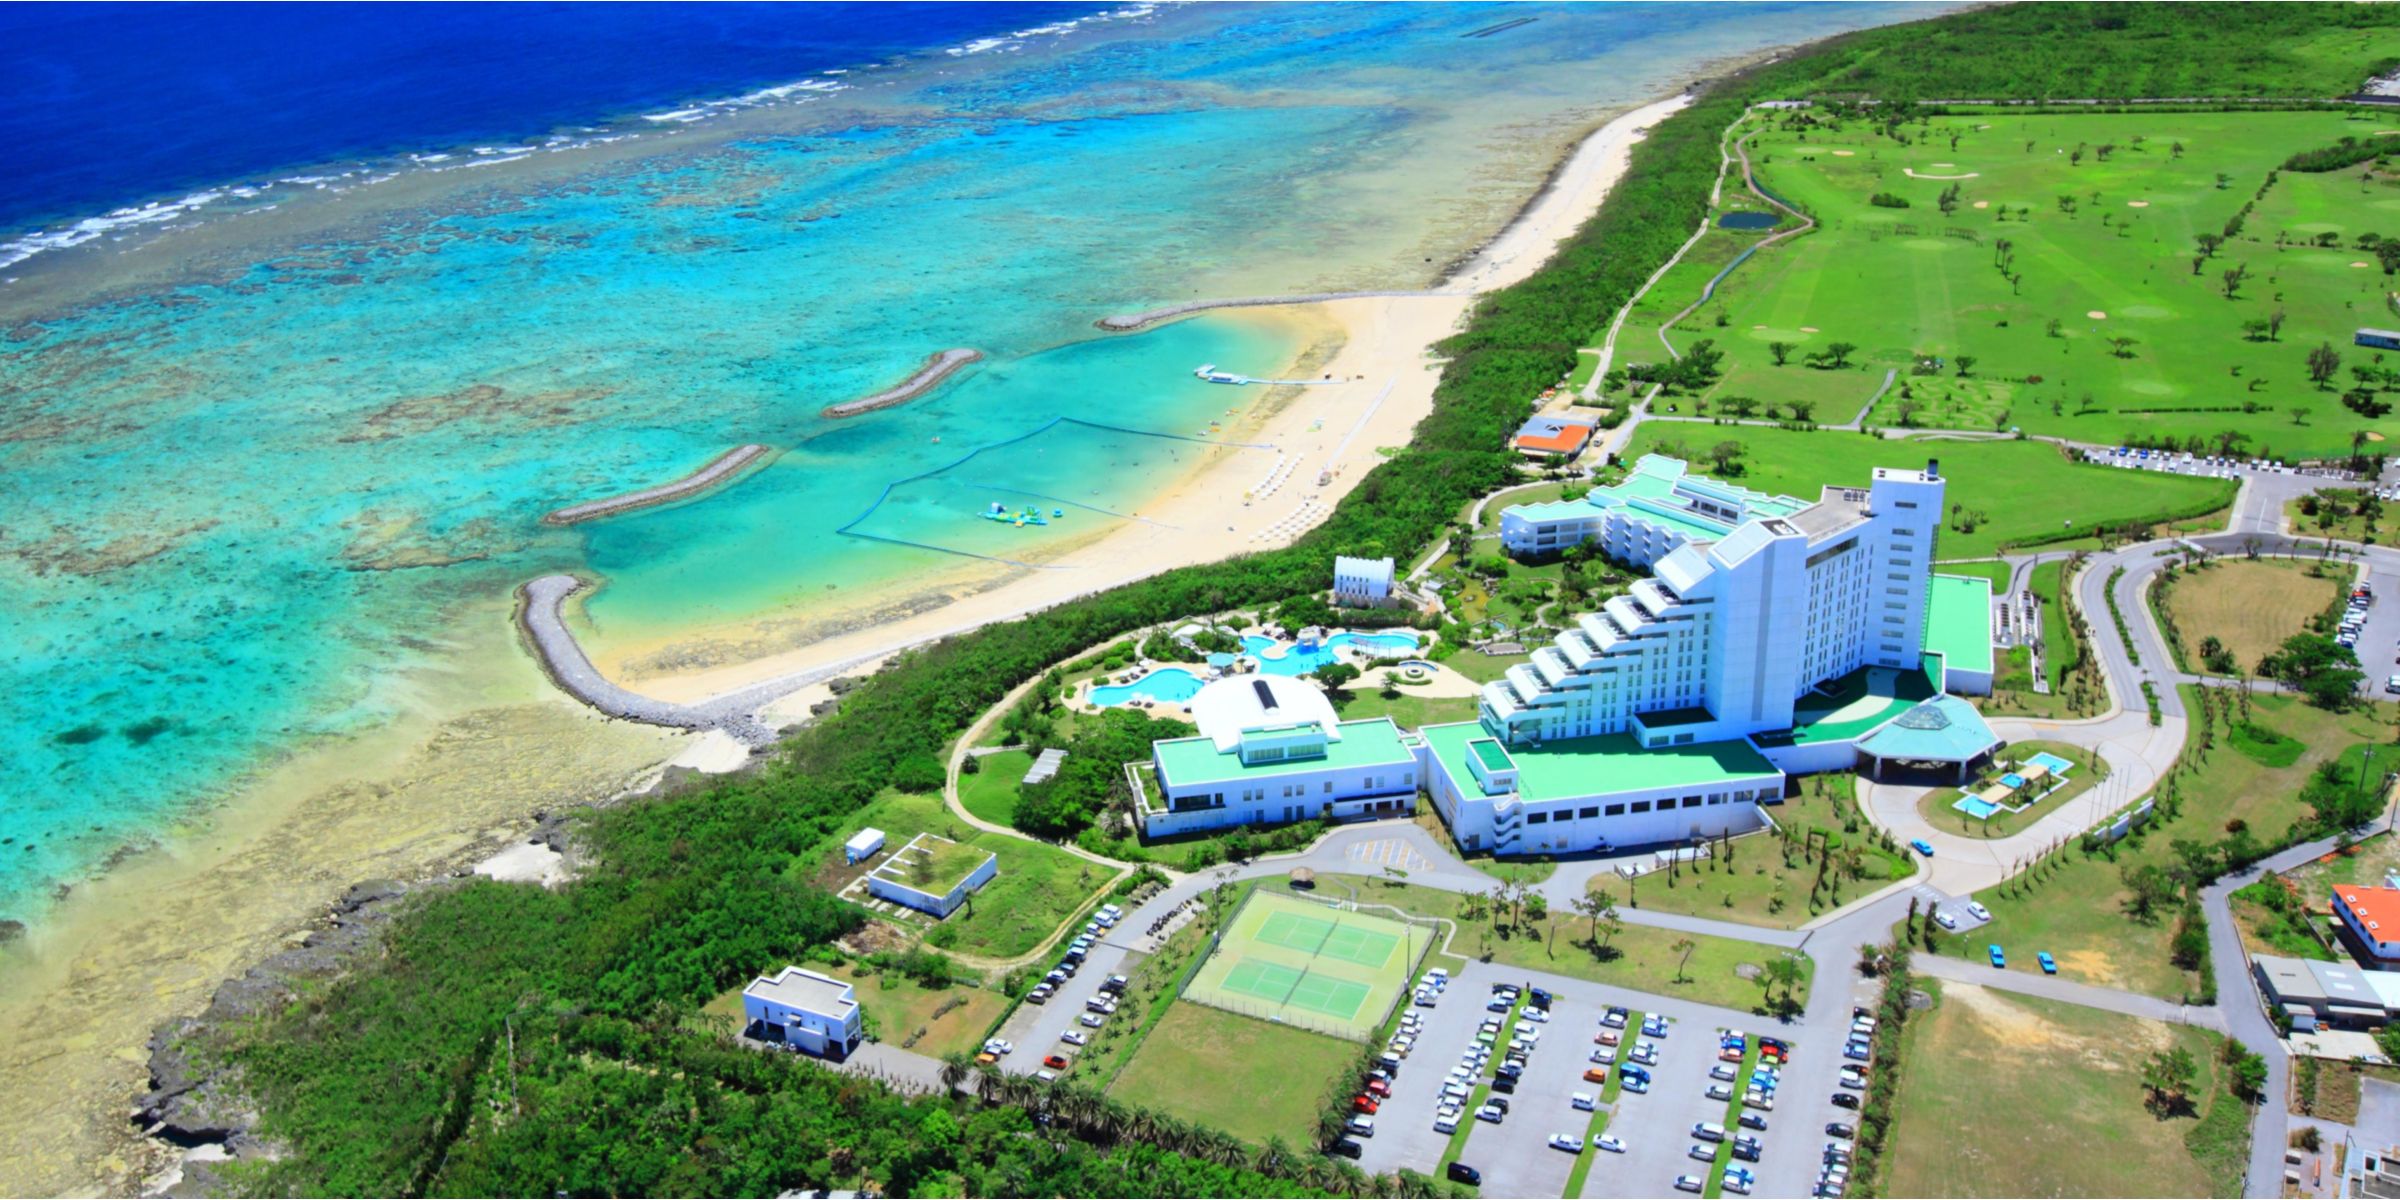 InterContinental-ANA Ishigaki Resort - Ishigaki-shi Okinawa